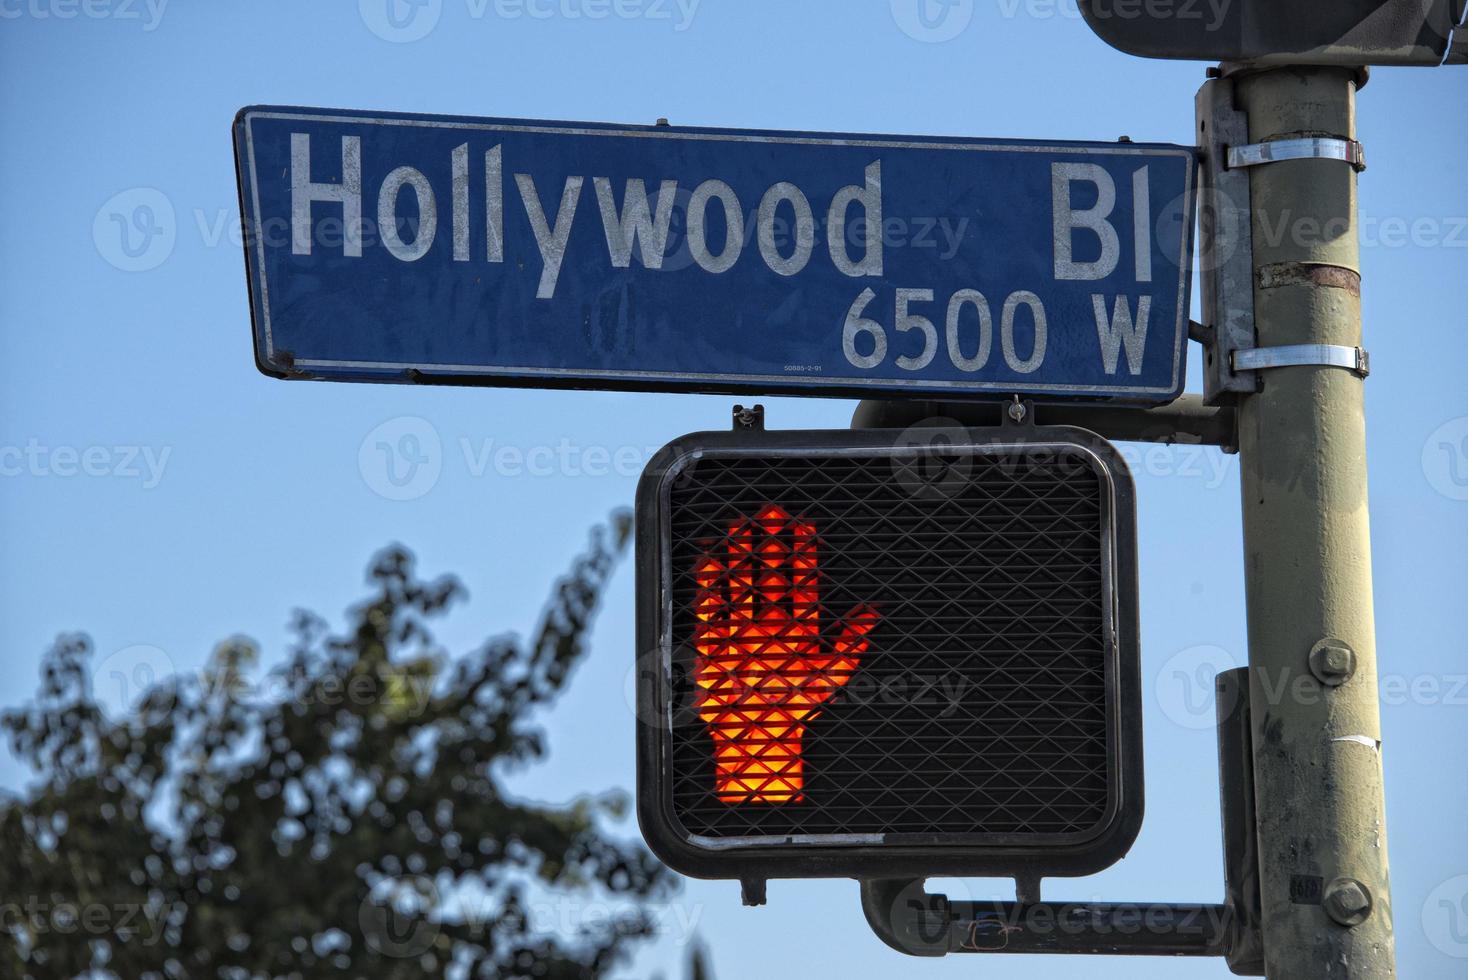 la hollywood boulevard placa de rua foto